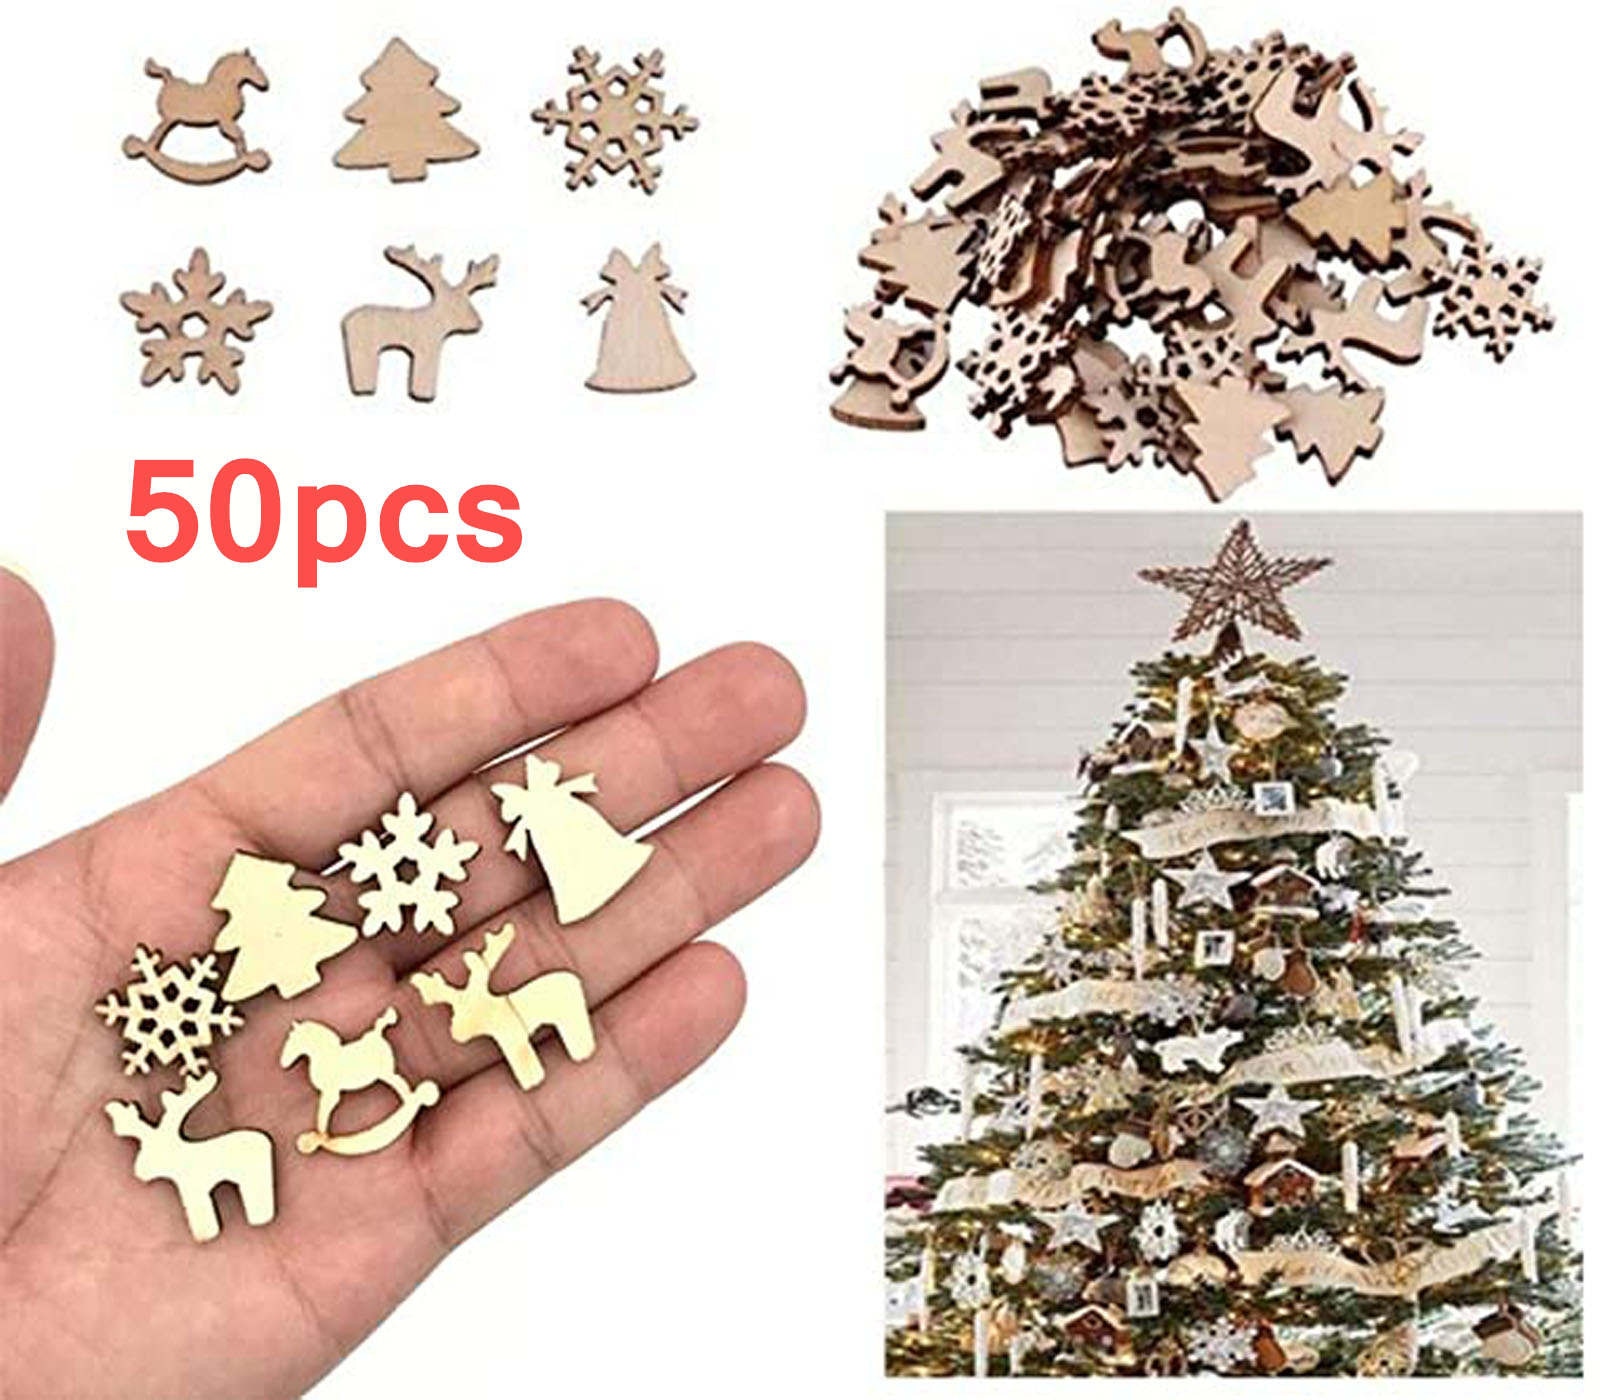 50Pcs Diy Craft Kerst Ornamenten Xmas Hout Chip Opknoping Ornamenten Decor Kerstboomversiering Kerst Decoratie